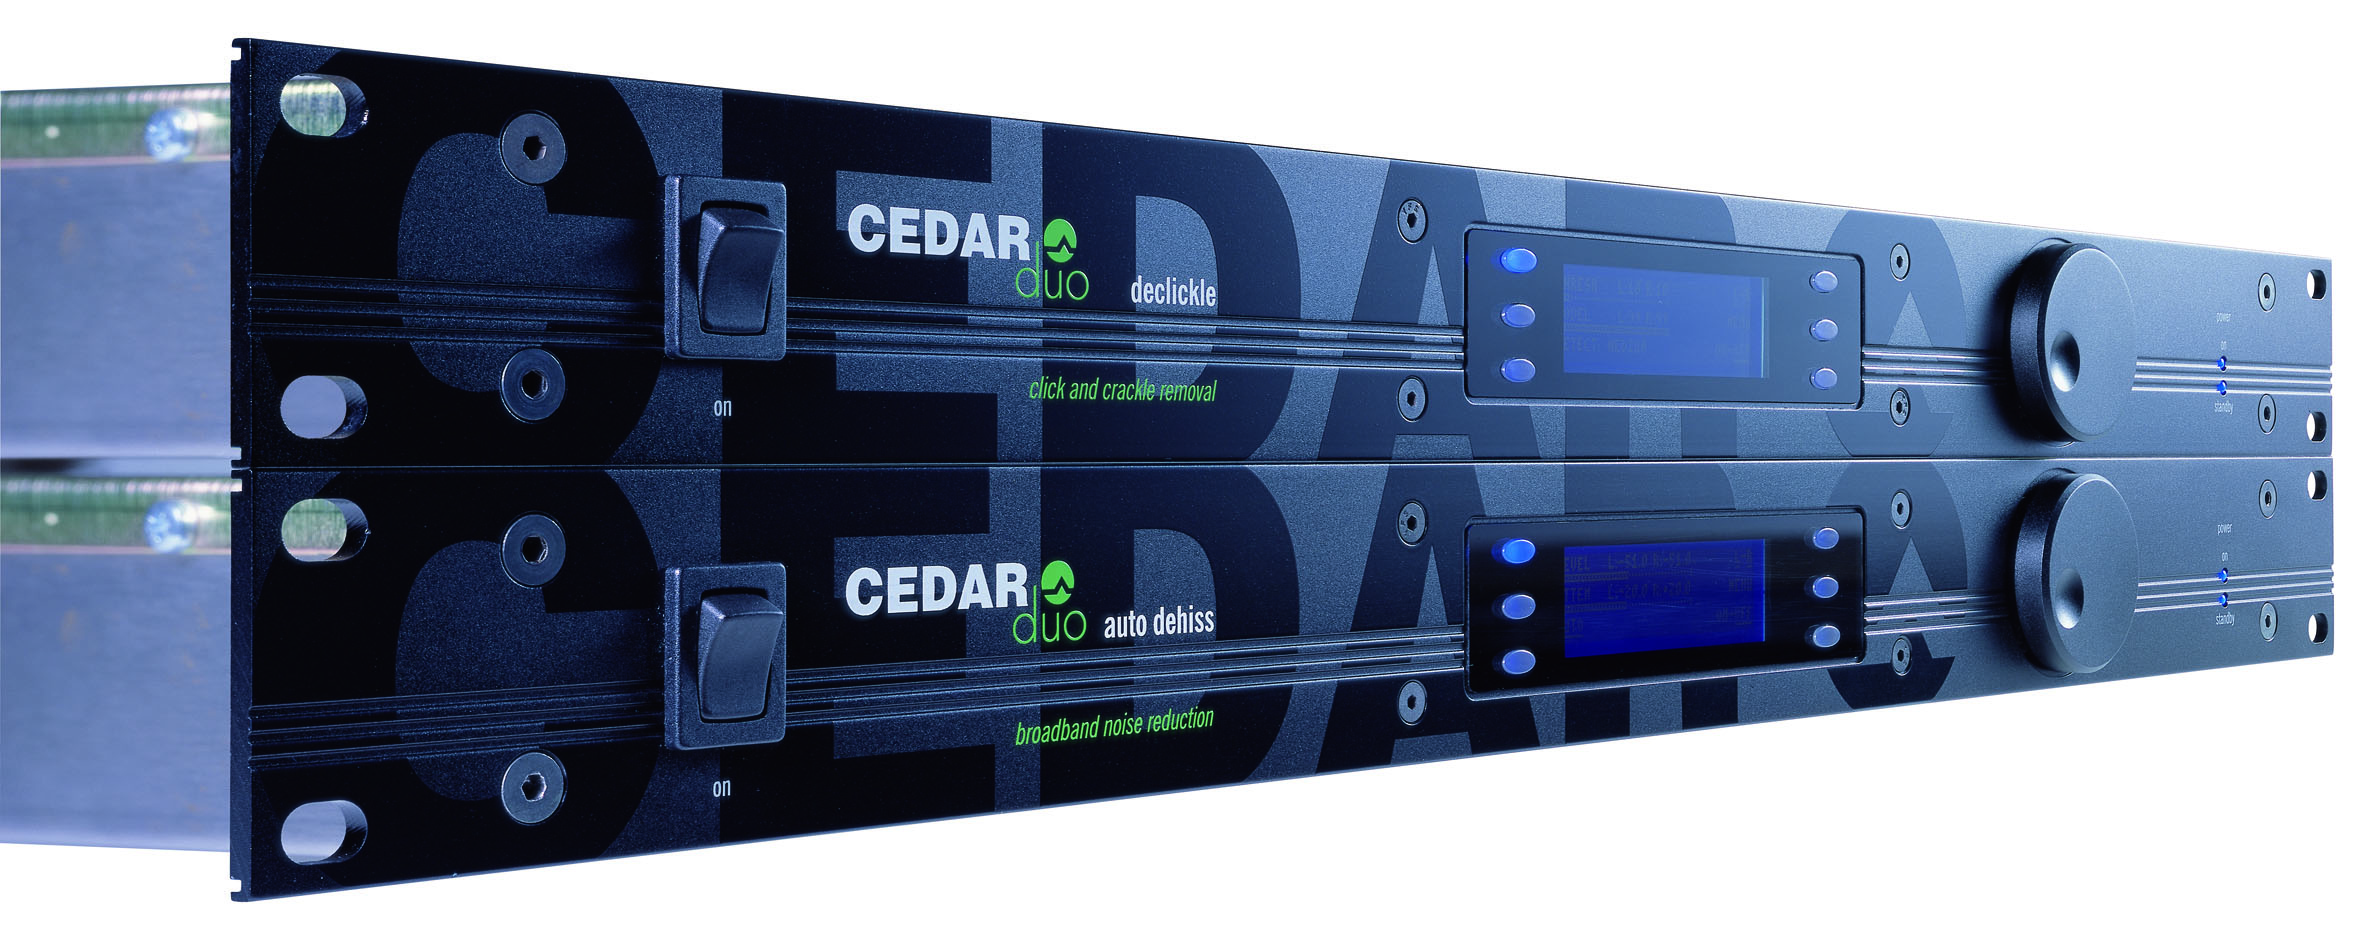 CEDAR Duo Declickle and Auto Dehiss